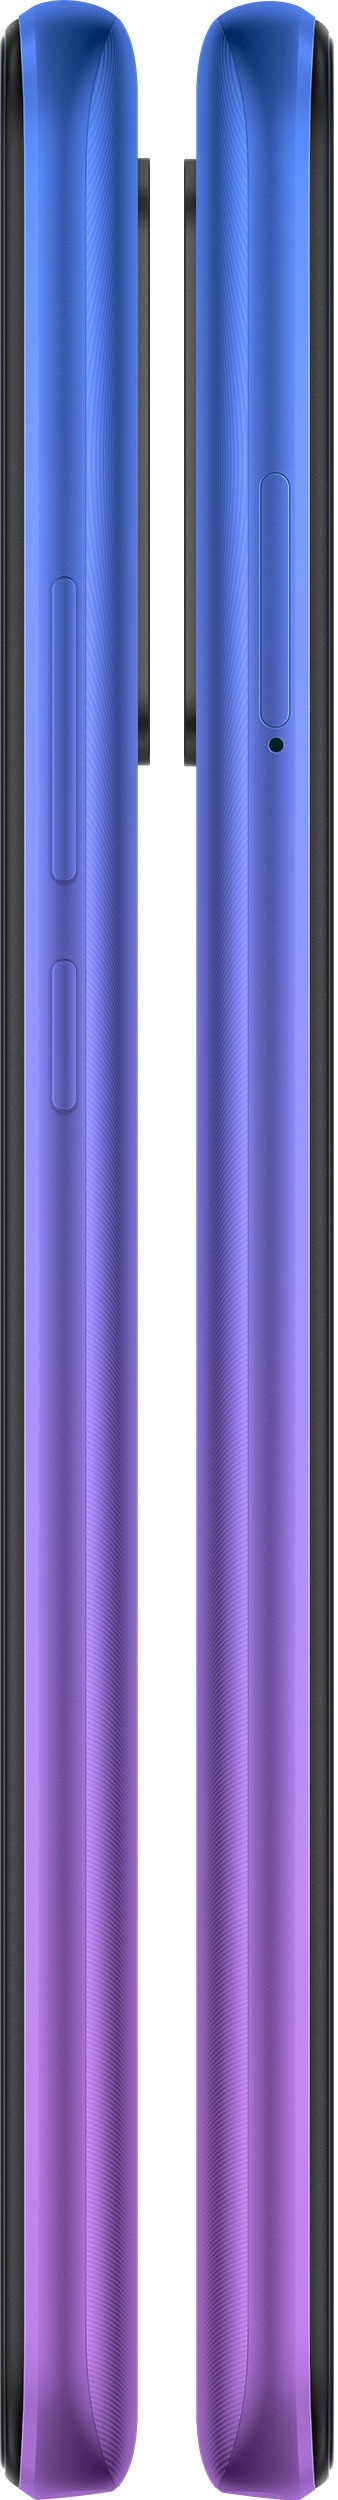 Xiaomi Redmi 9 3/32GB NFC (RU)